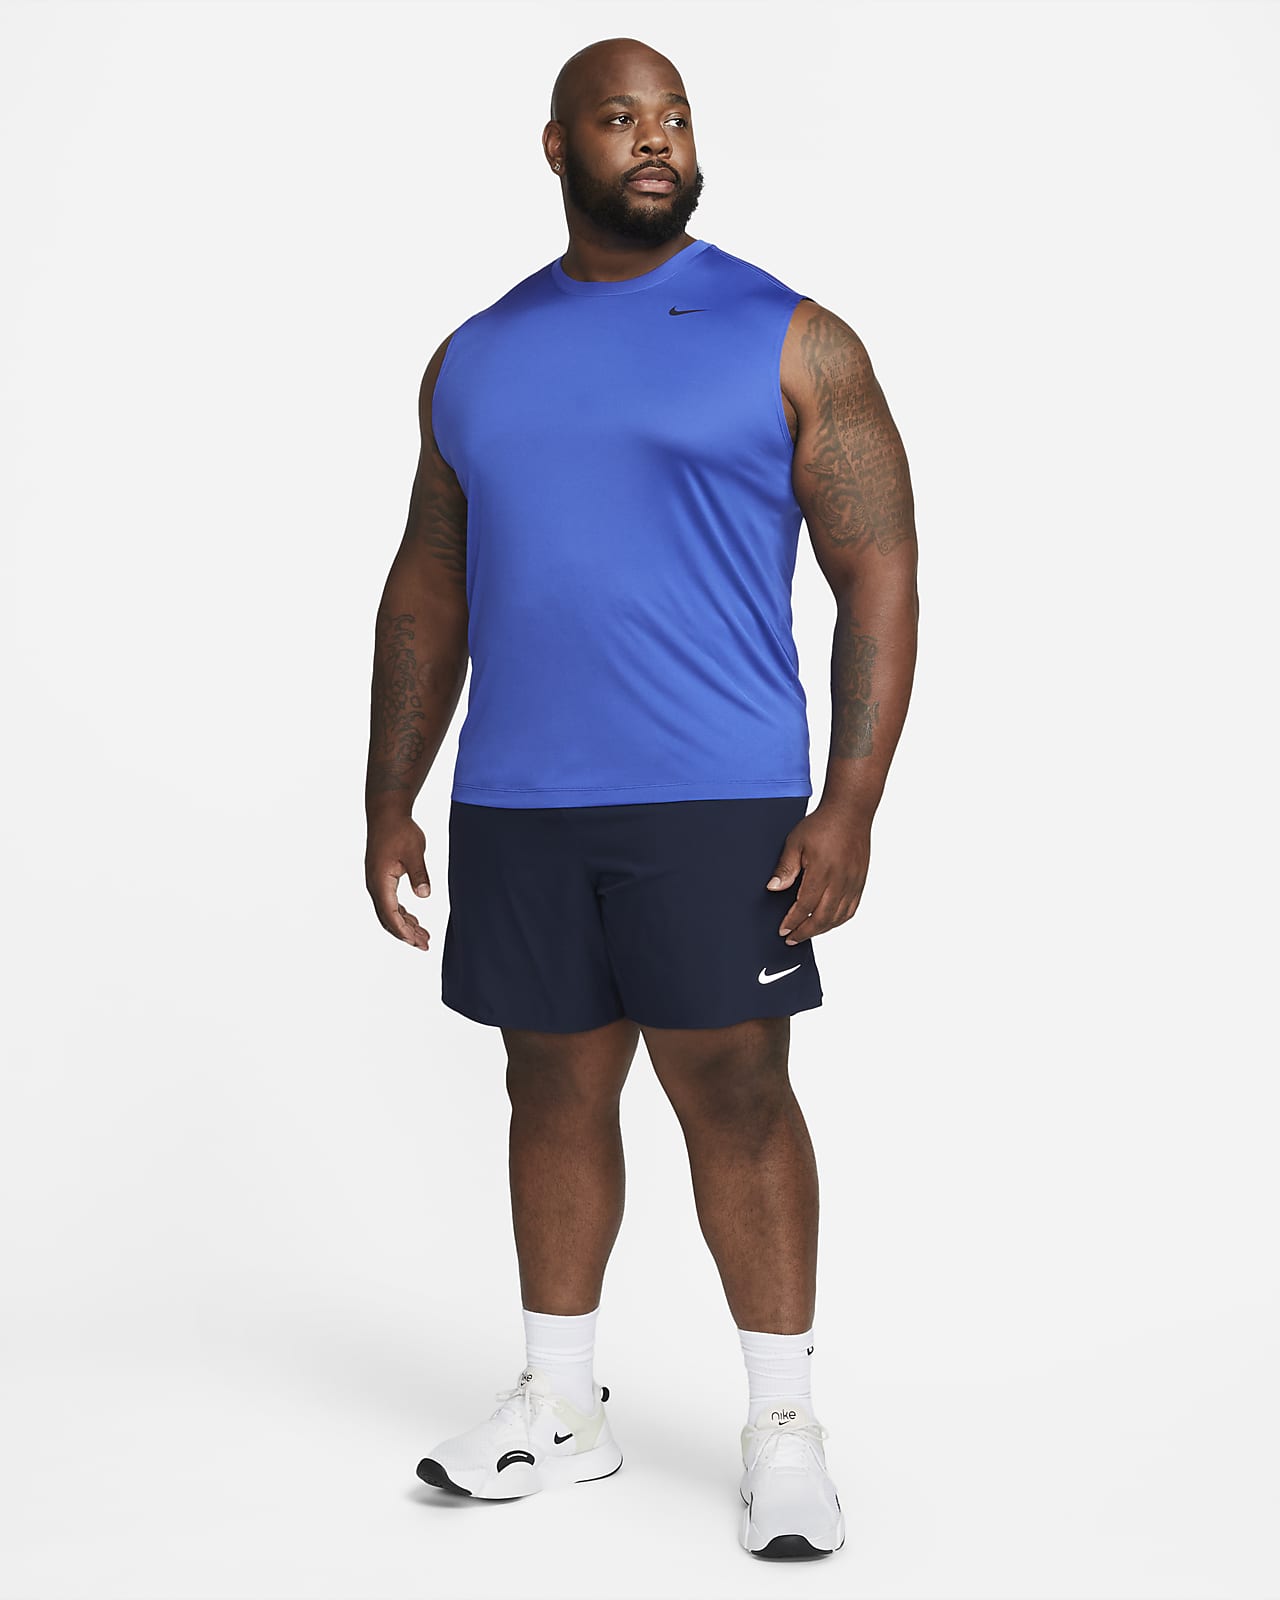 Nike Dri-fit Hooded Men's Sleeveless Training Top in Black for Men